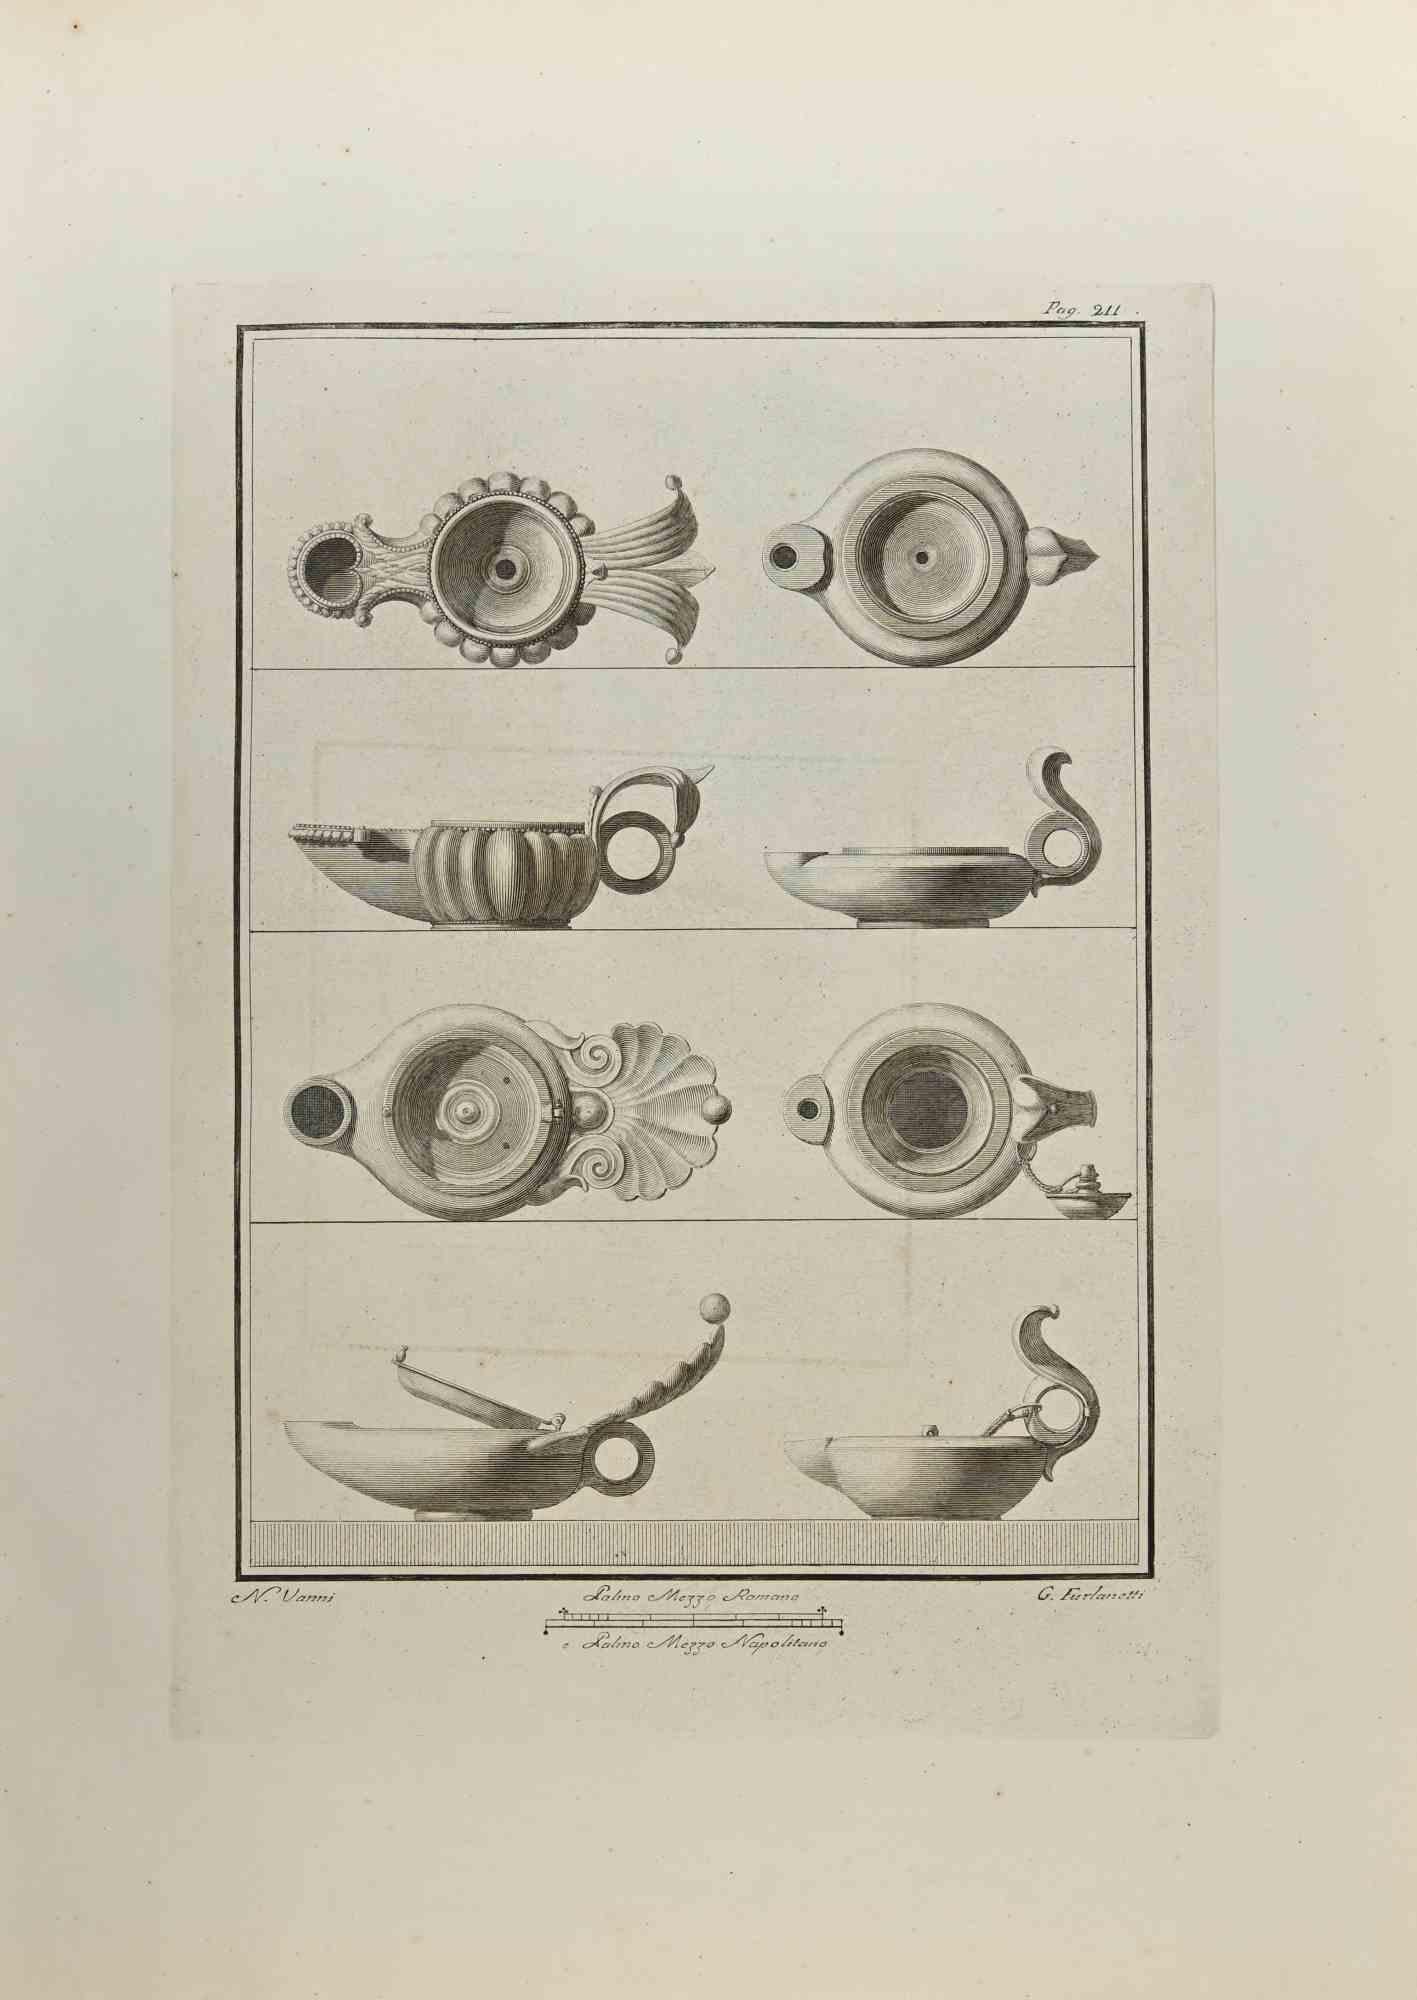 Nature morte des "Antiquités d'Herculanum" est une gravure sur papier réalisée par G. Furlanetti et Nicola Vanni au 18ème siècle.

Signé sur la plaque.

Bon état avec quelques pliures.

La gravure appartient à la suite d'estampes "Antiquités